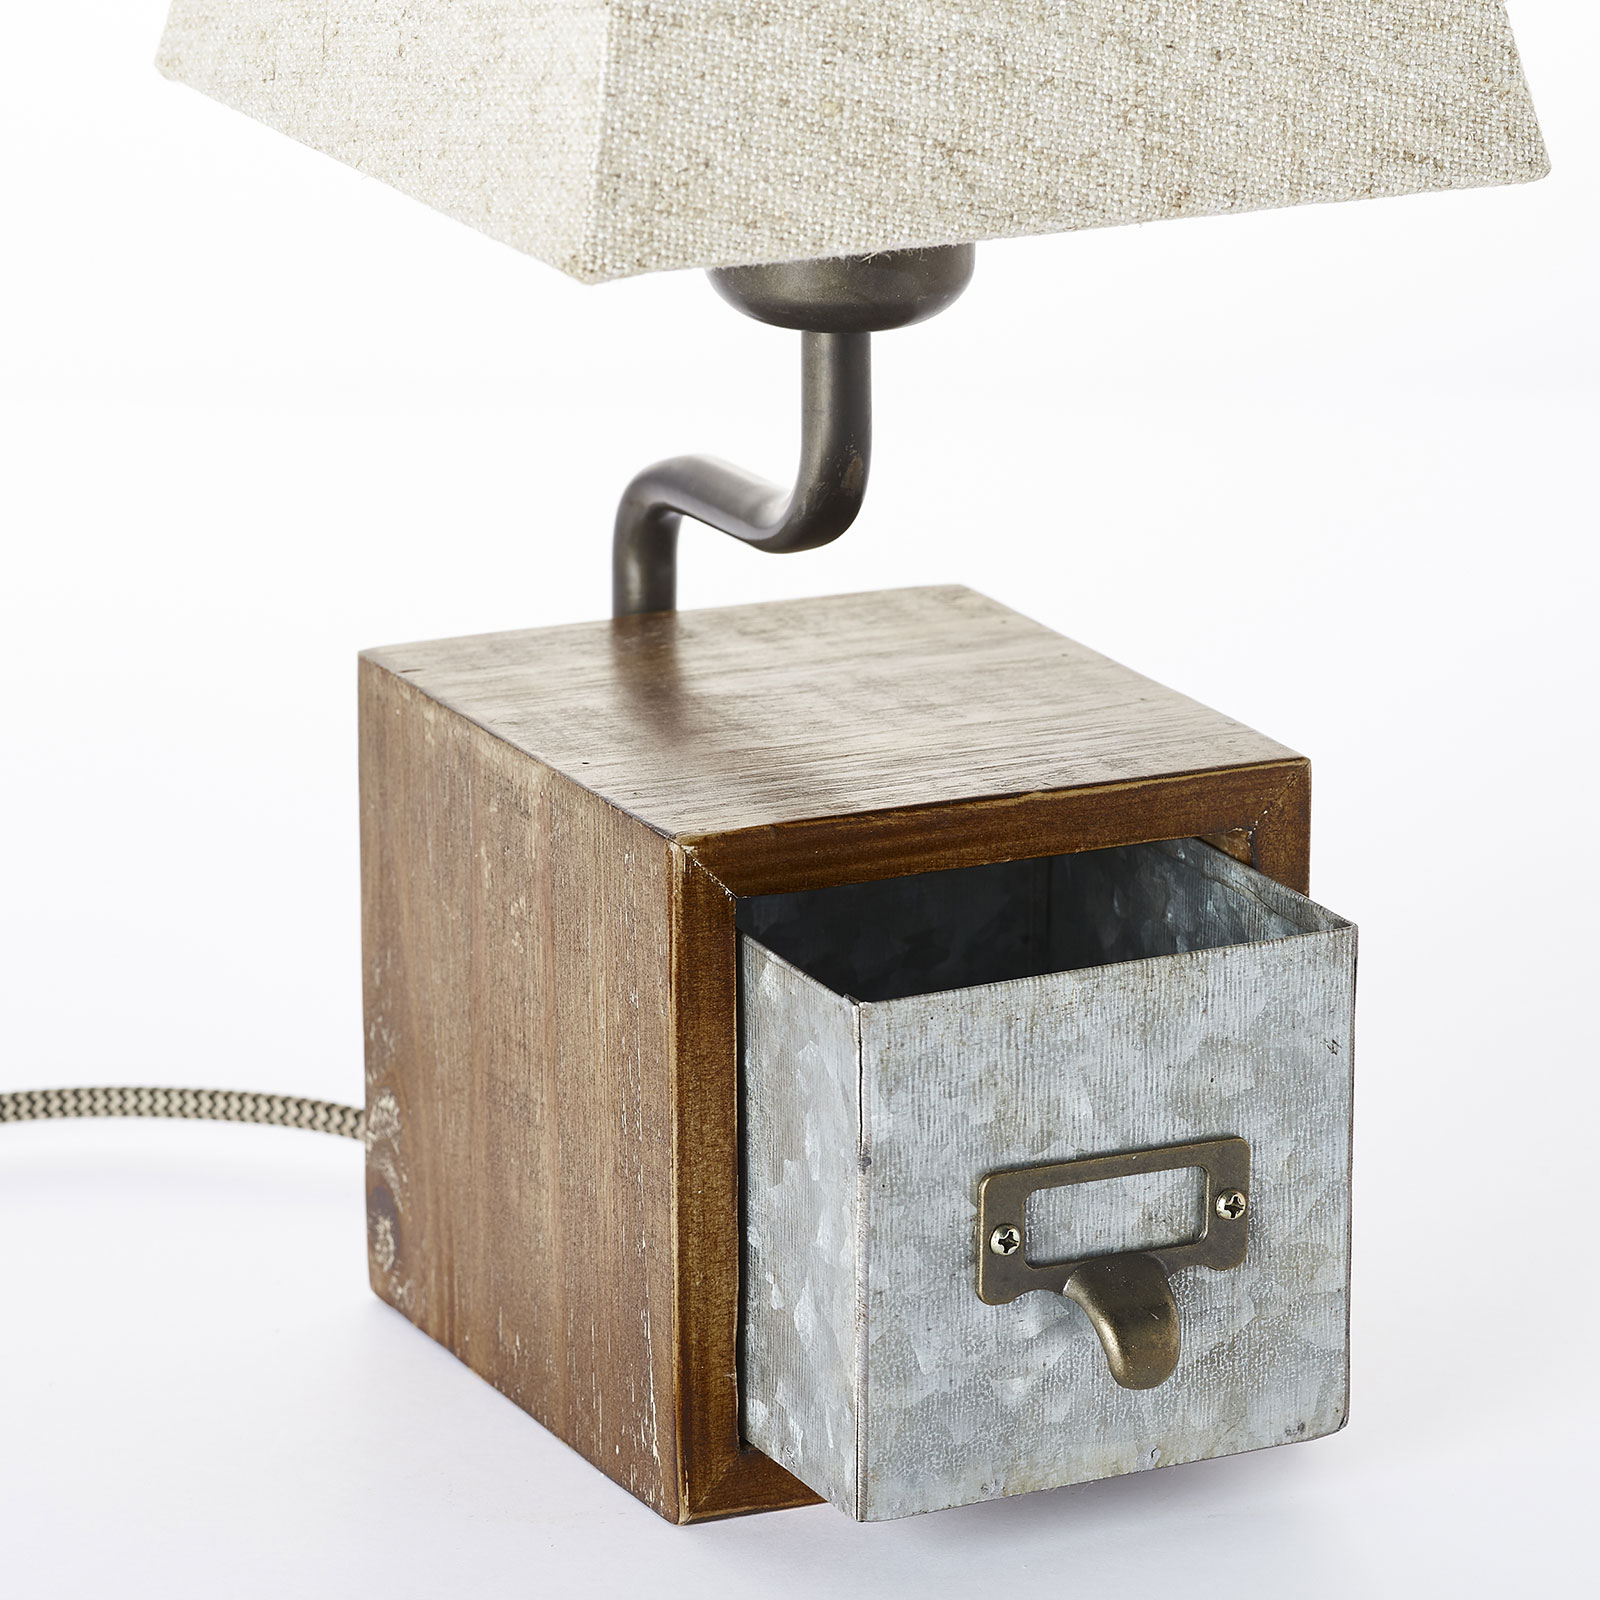 Textilní stolní lampa Casket se zásuvkou